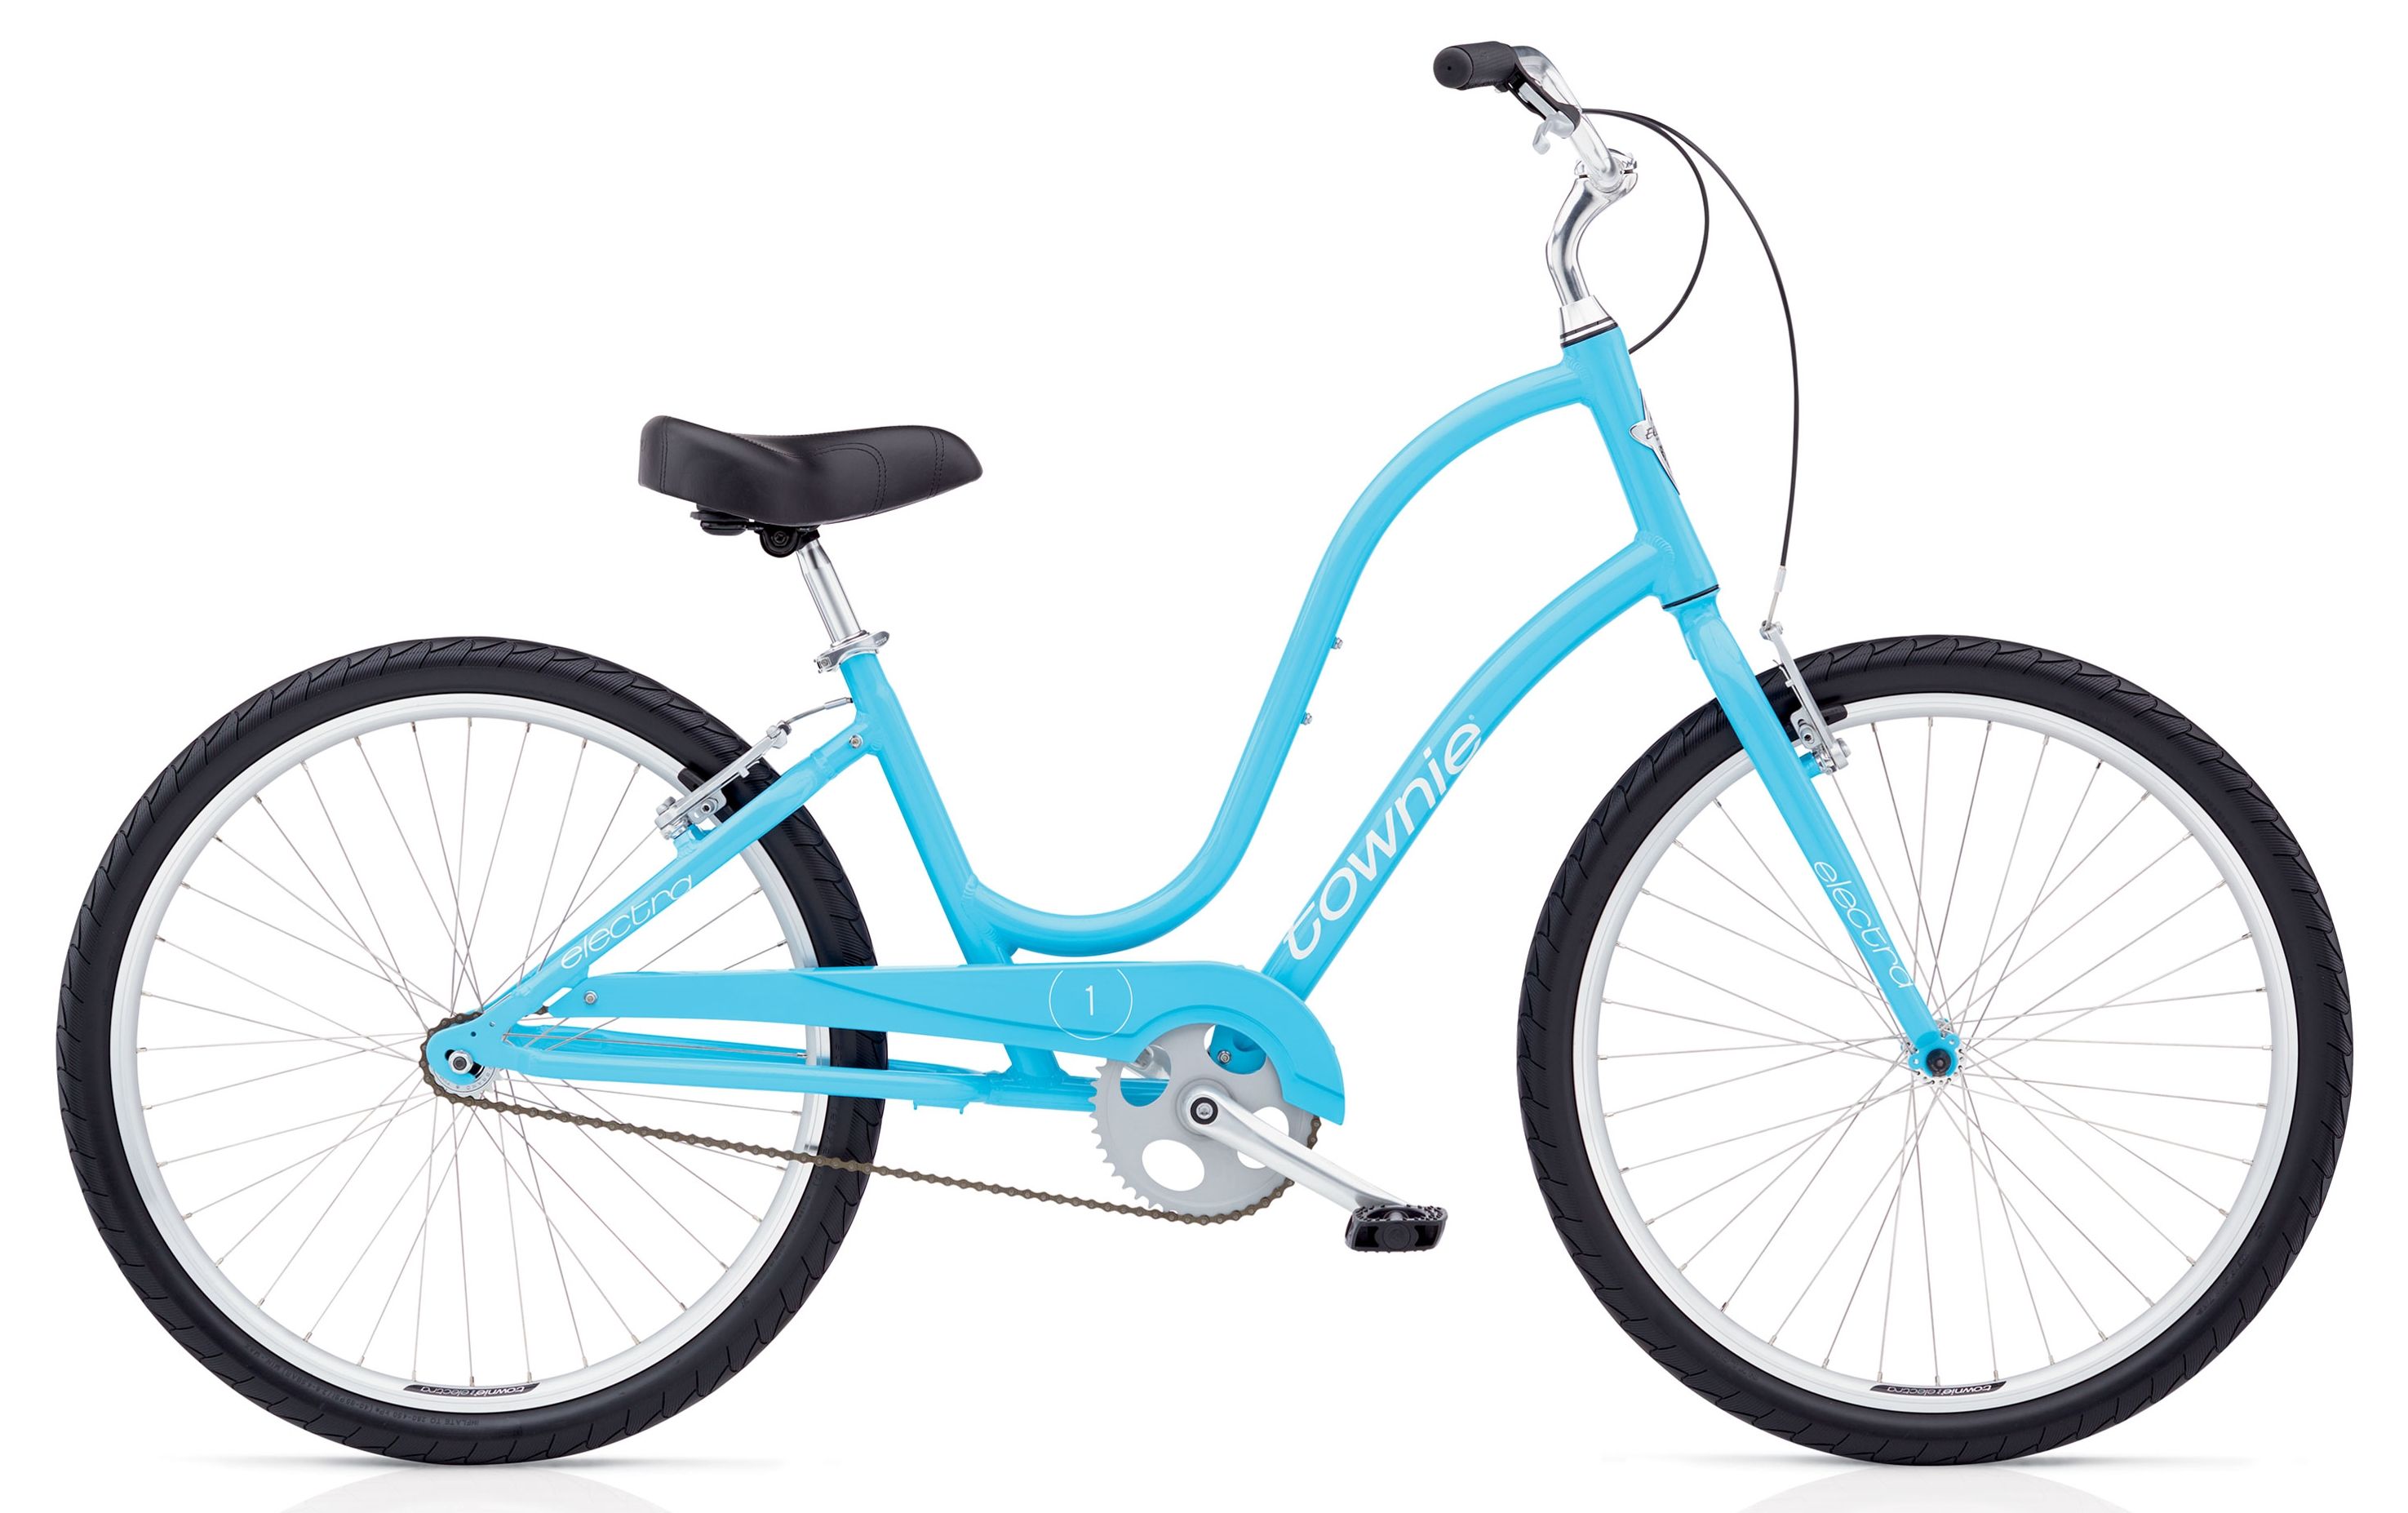  Велосипед Electra Townie Original 1 Ladies 2017